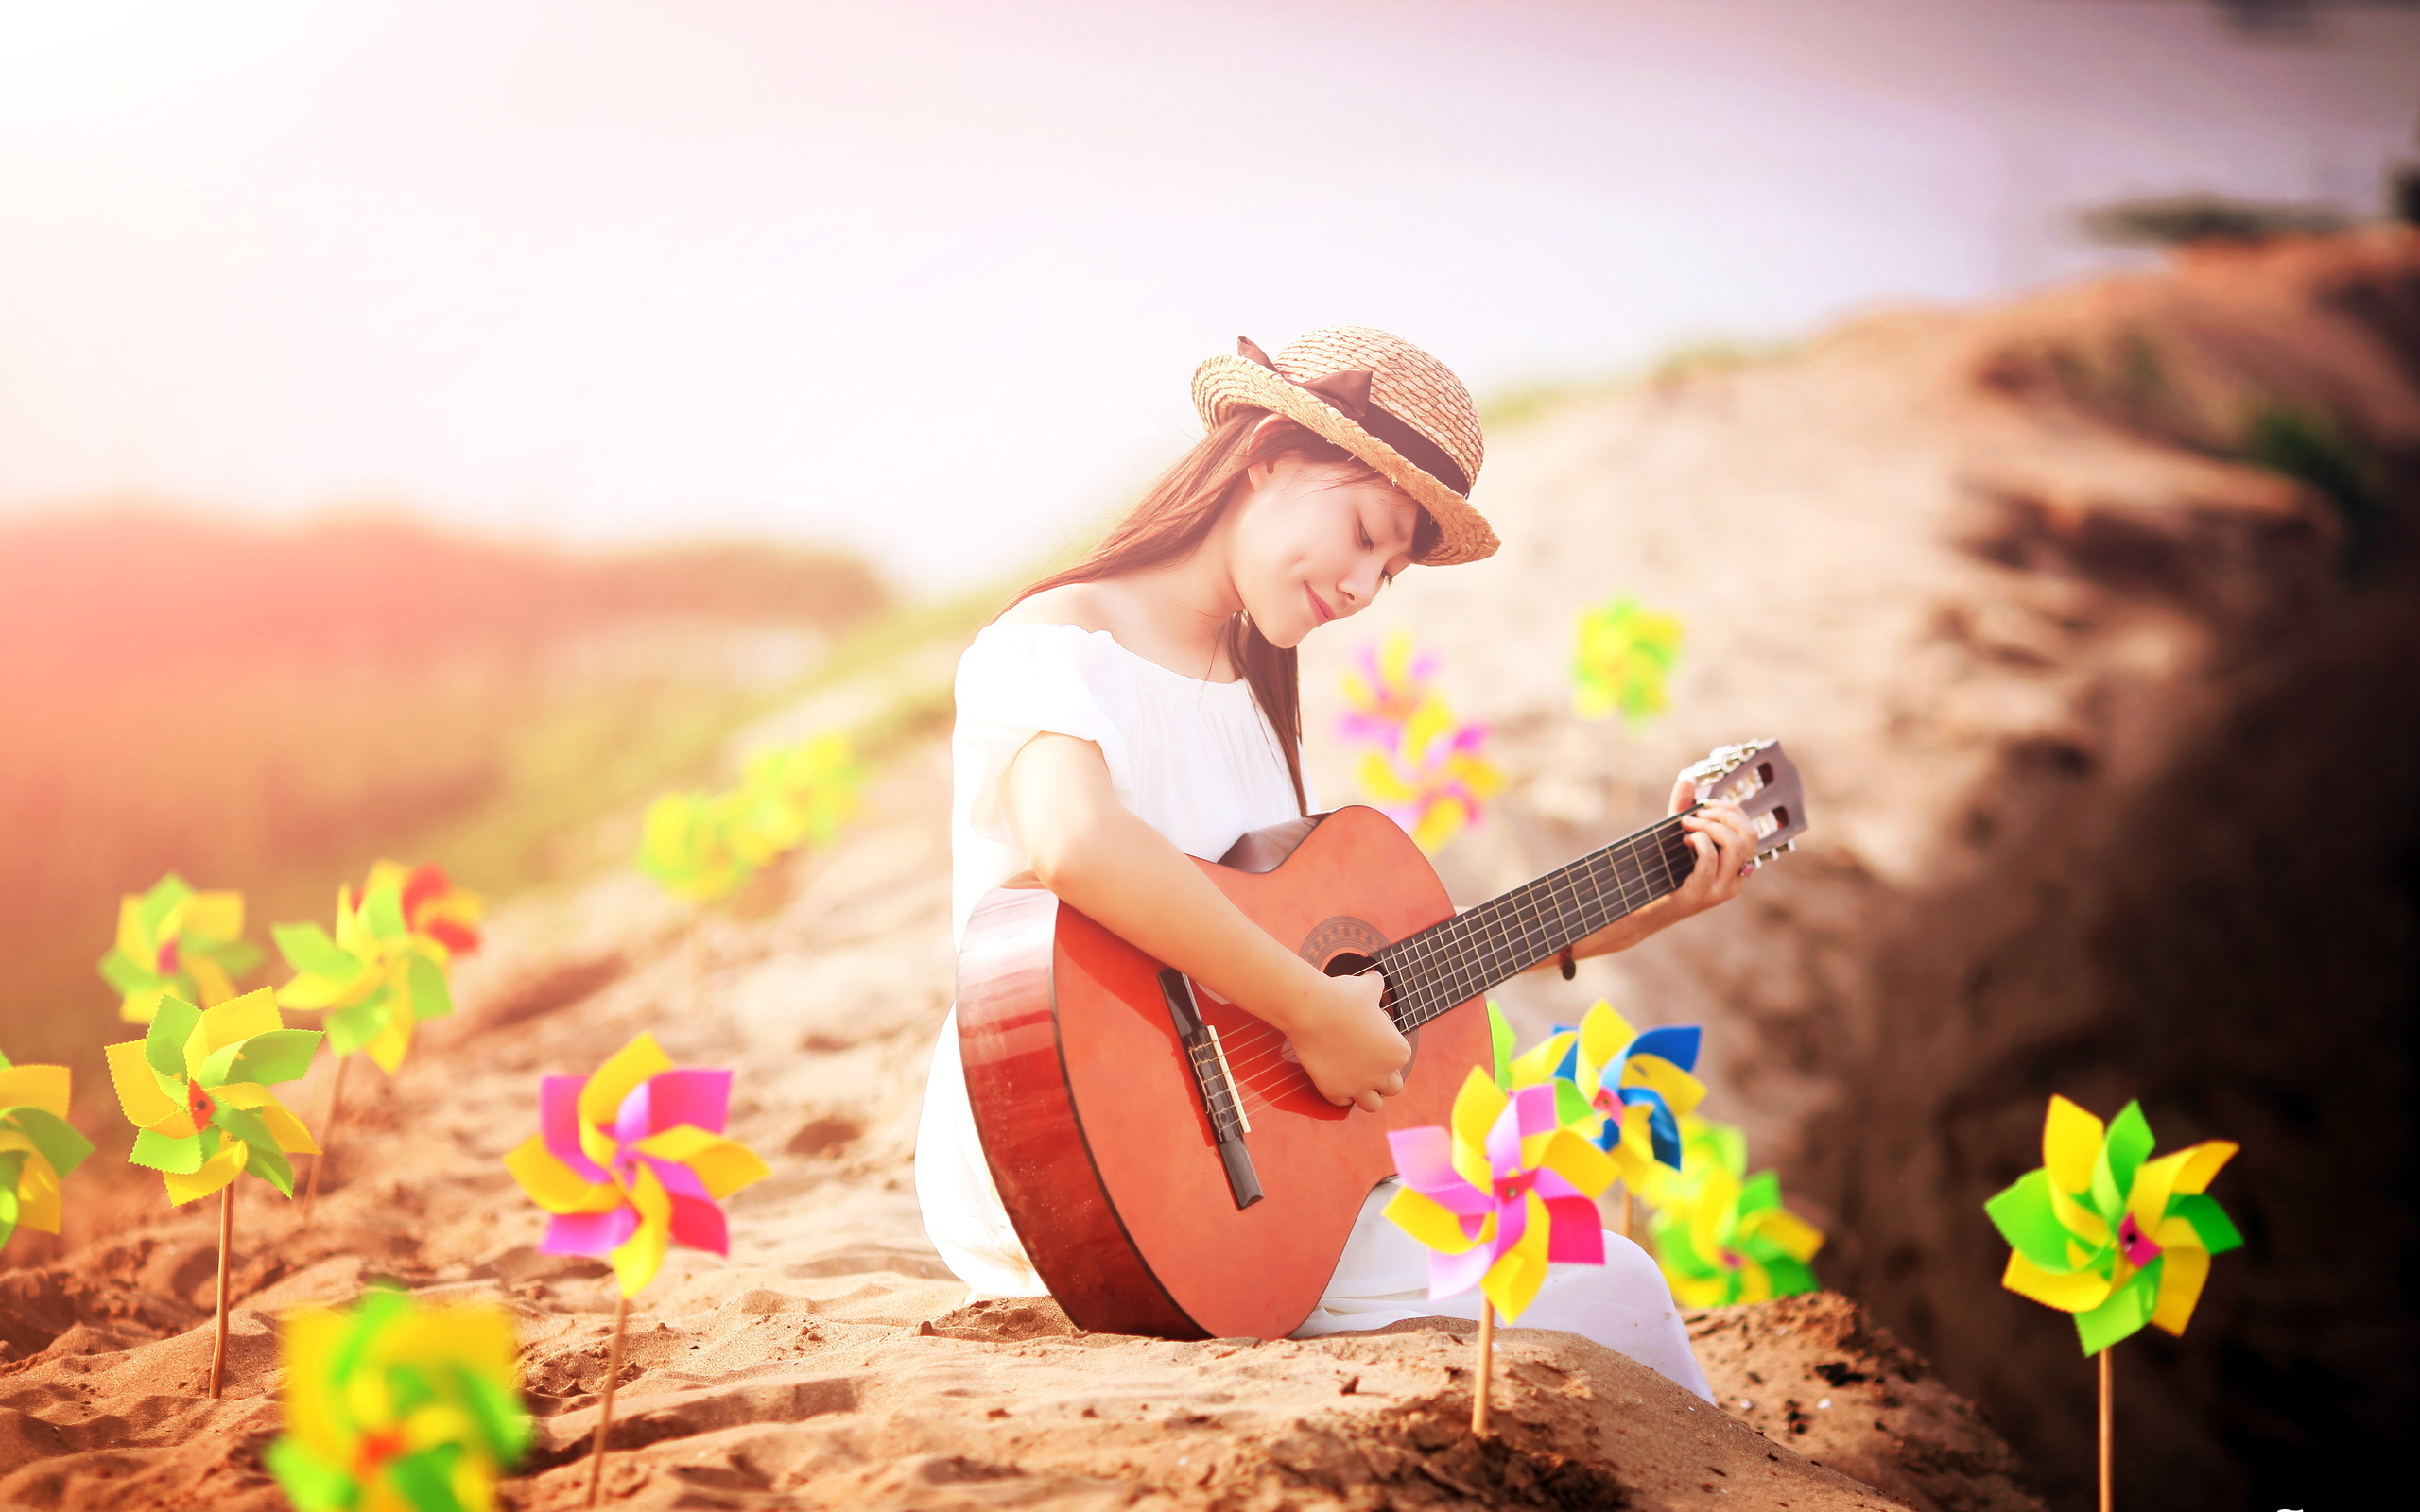 Песня счастье тебе к лицу. Фотосессия с гитарой на природе. Девушка с гитарой. Девушка с гитарой на природе. Музыкальная фотосессия.